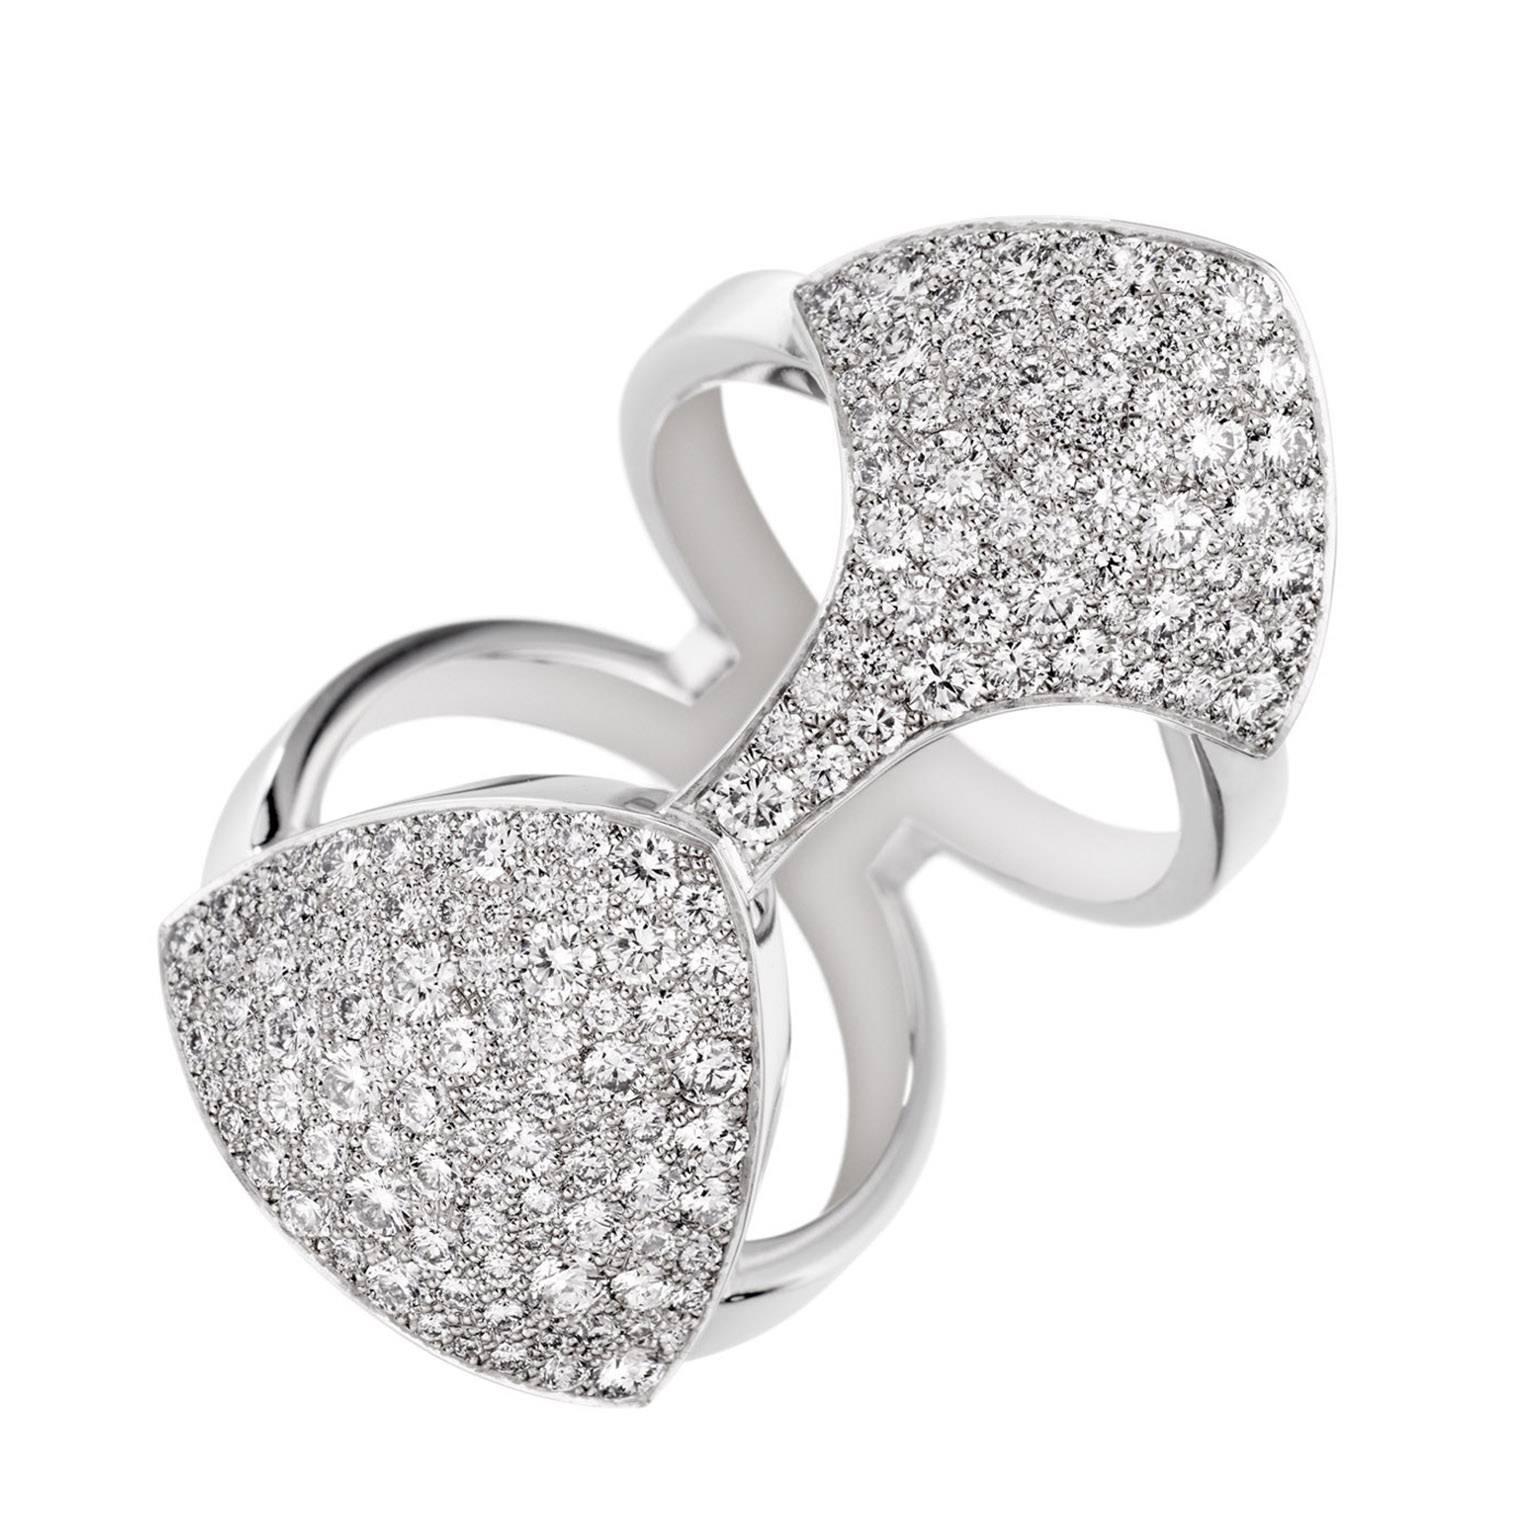 Akillis Python Armor White Gold White Diamond Ring  For Sale